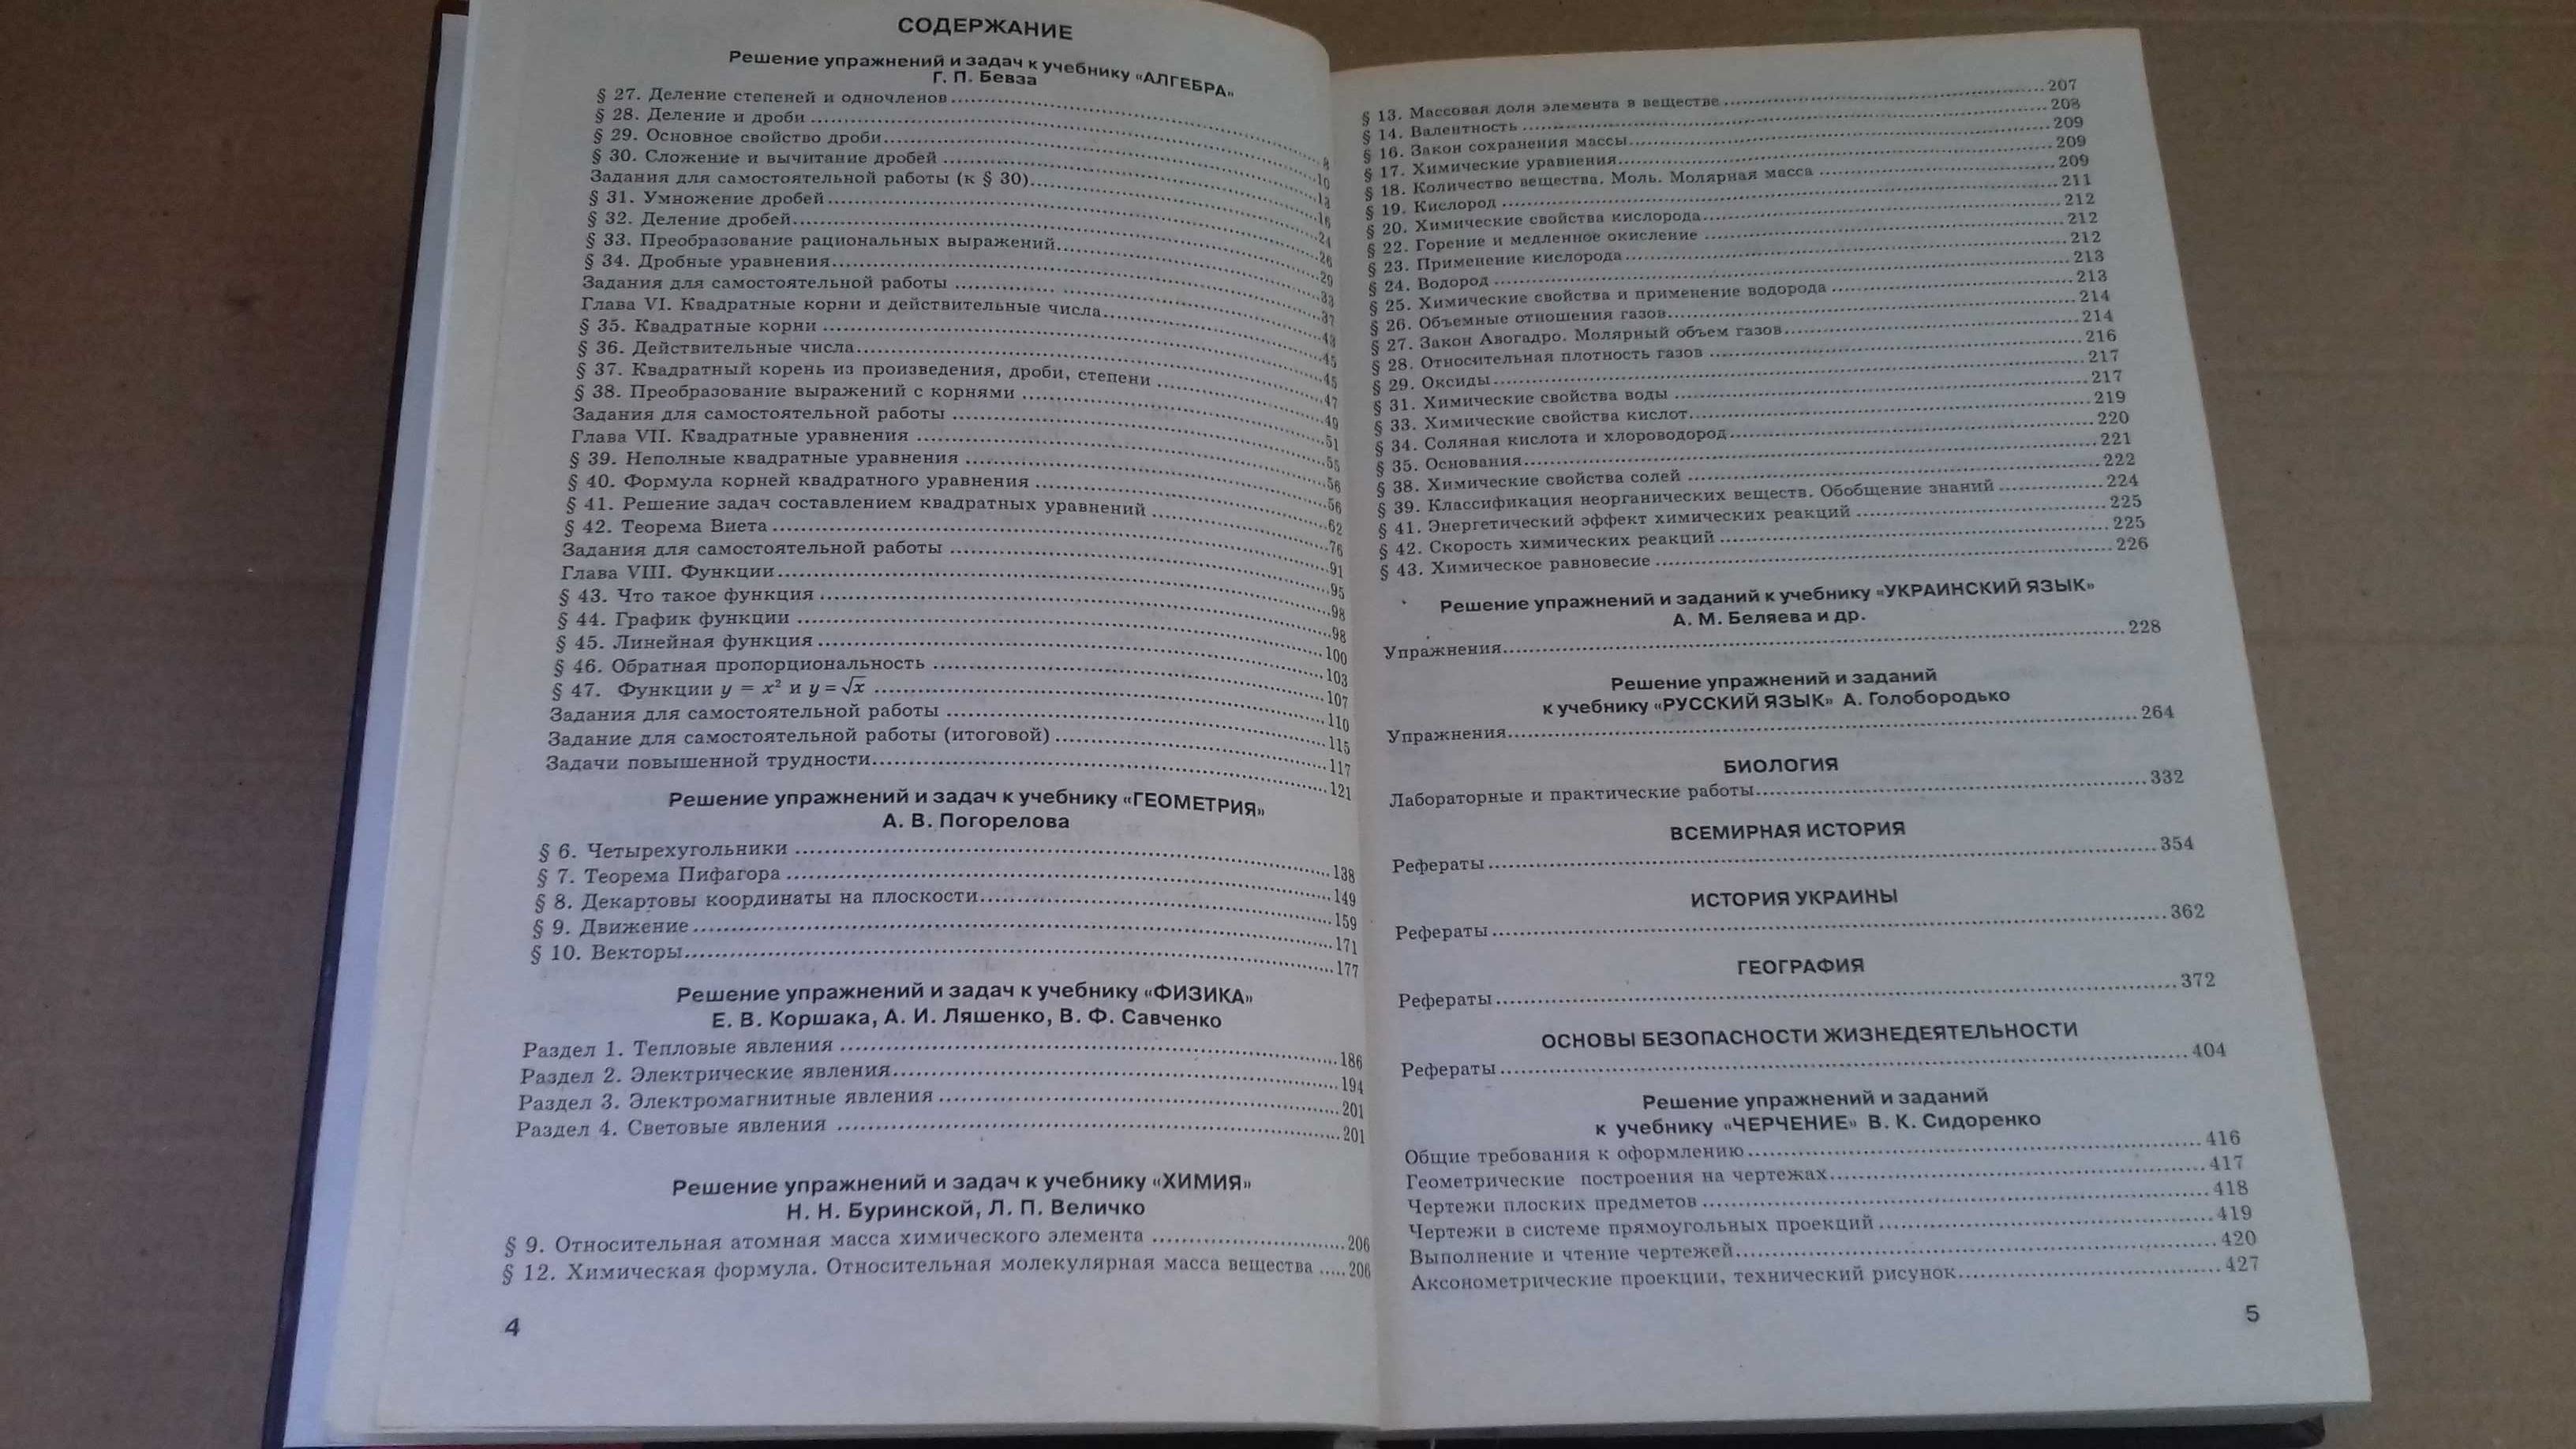 ГДР 8 класс,Решения к учебнику Геометрия 10-11А.В.Погорелова